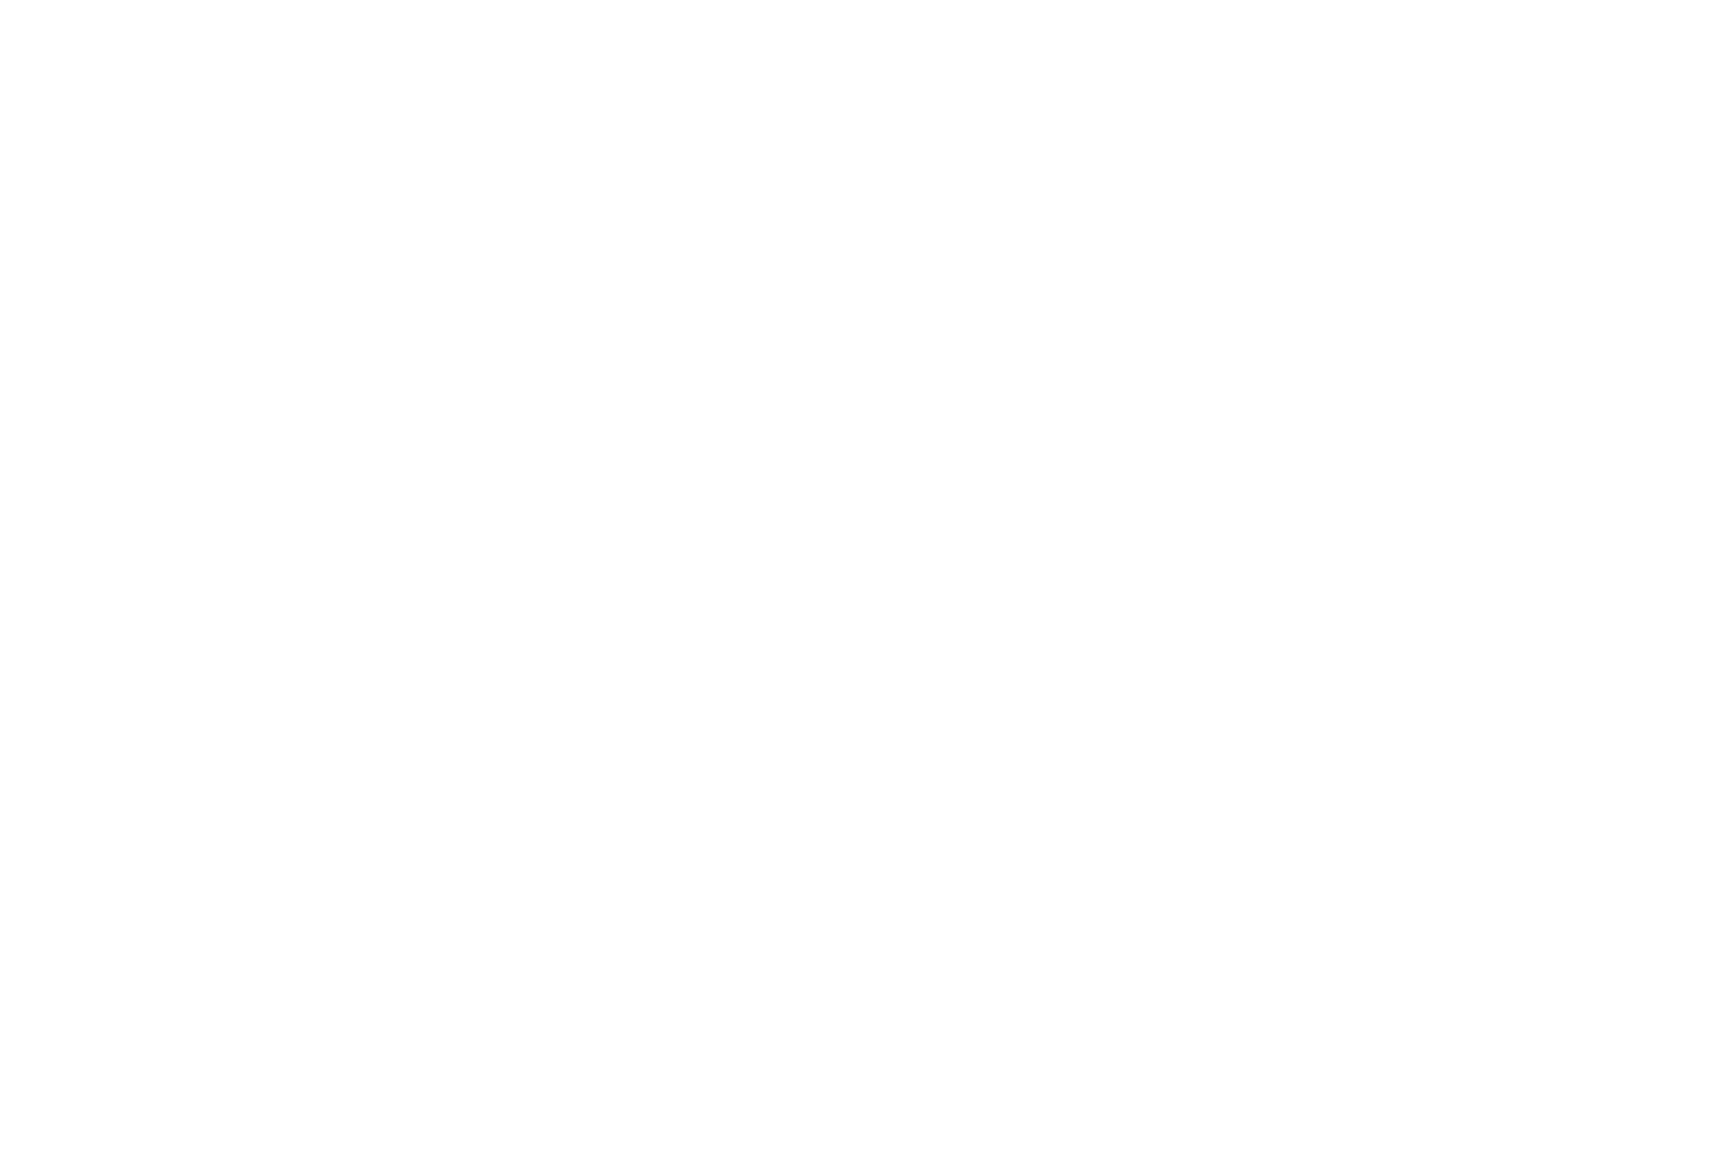 Best Sound Effects at TAMMFF 2023.